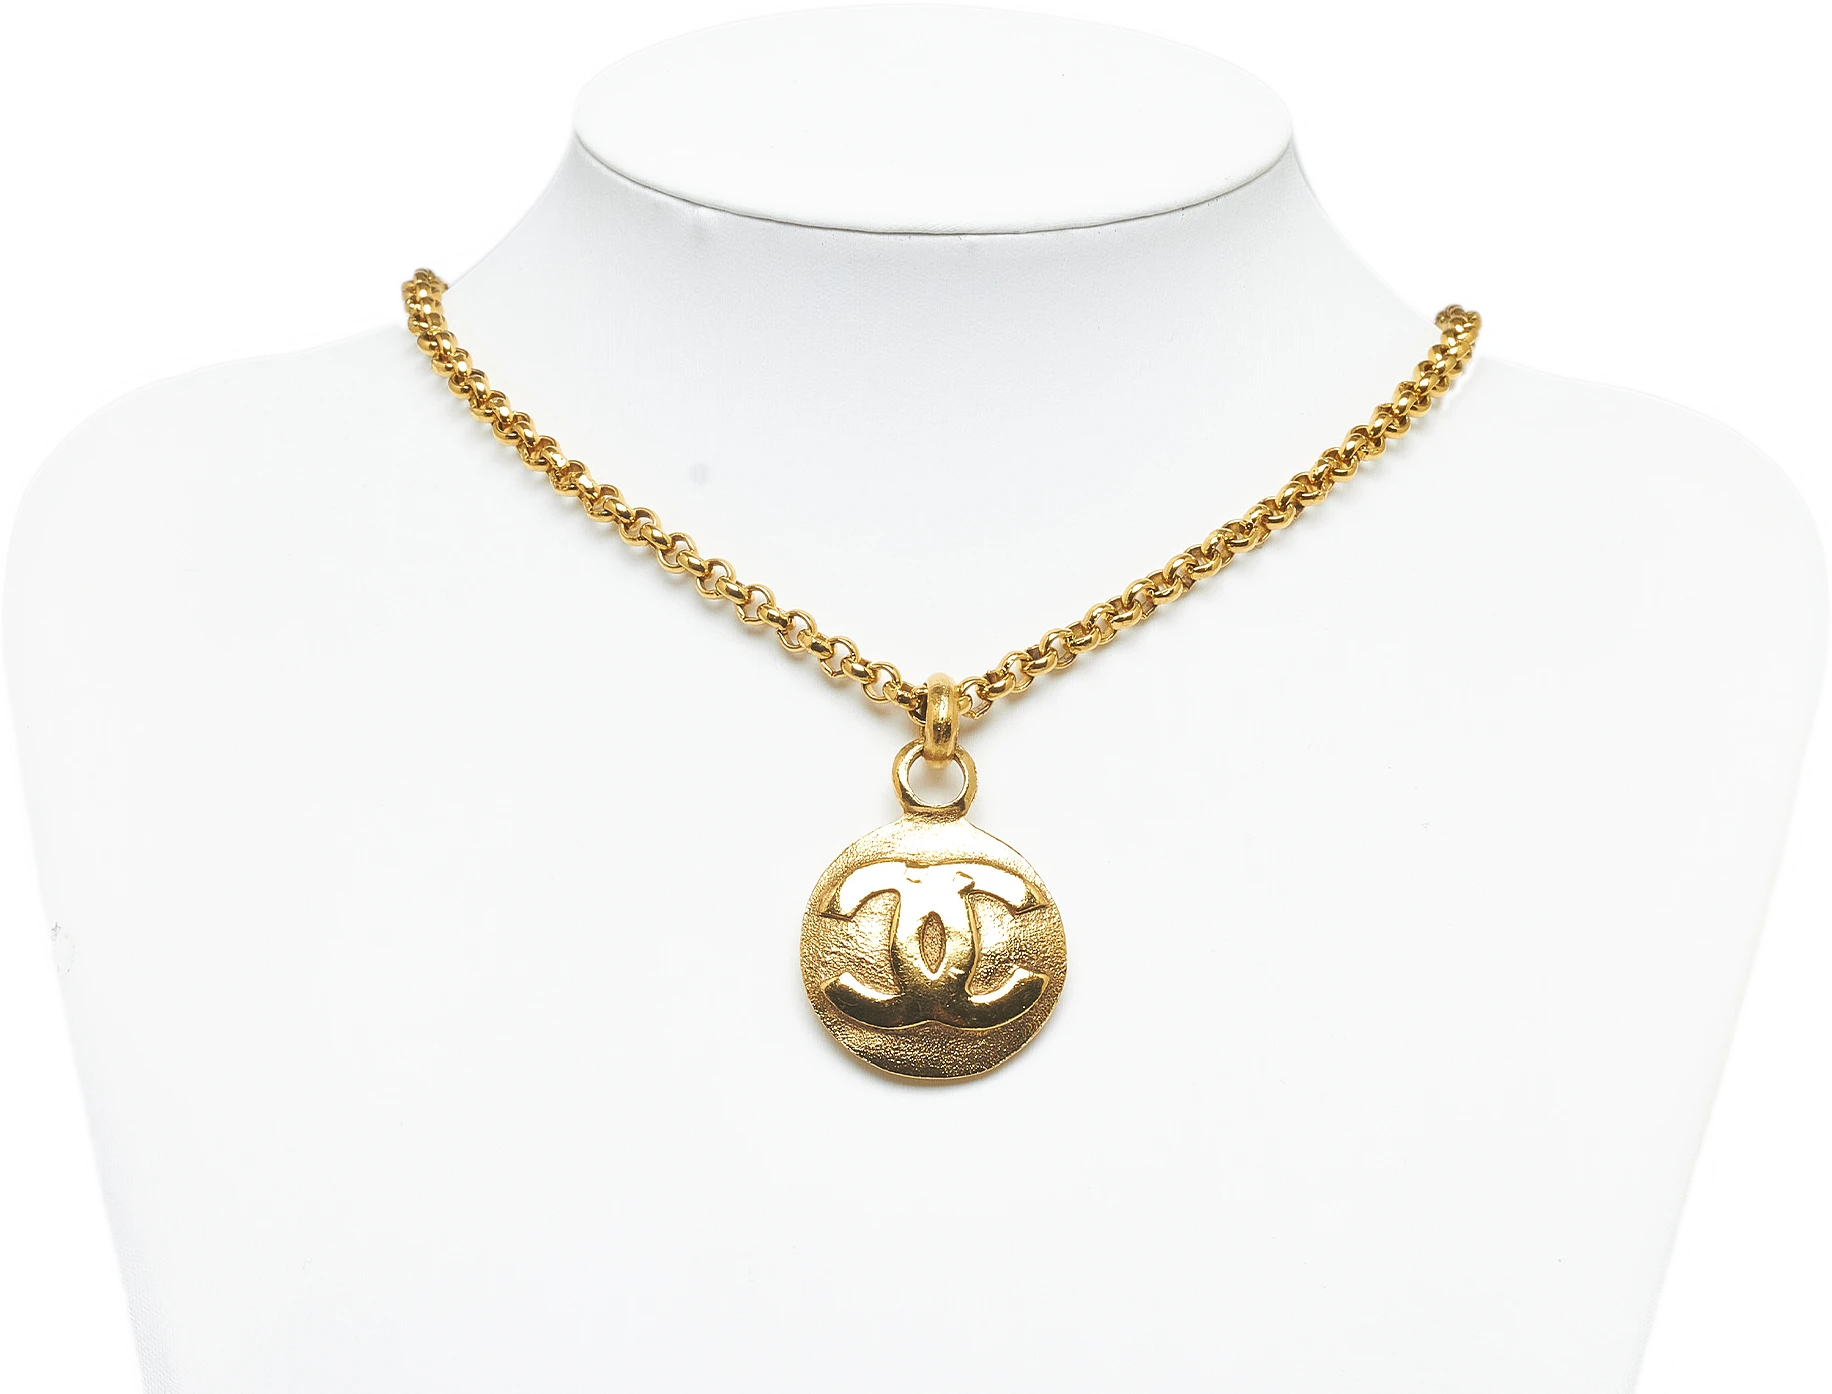 Chanel Cc Pendant Necklace